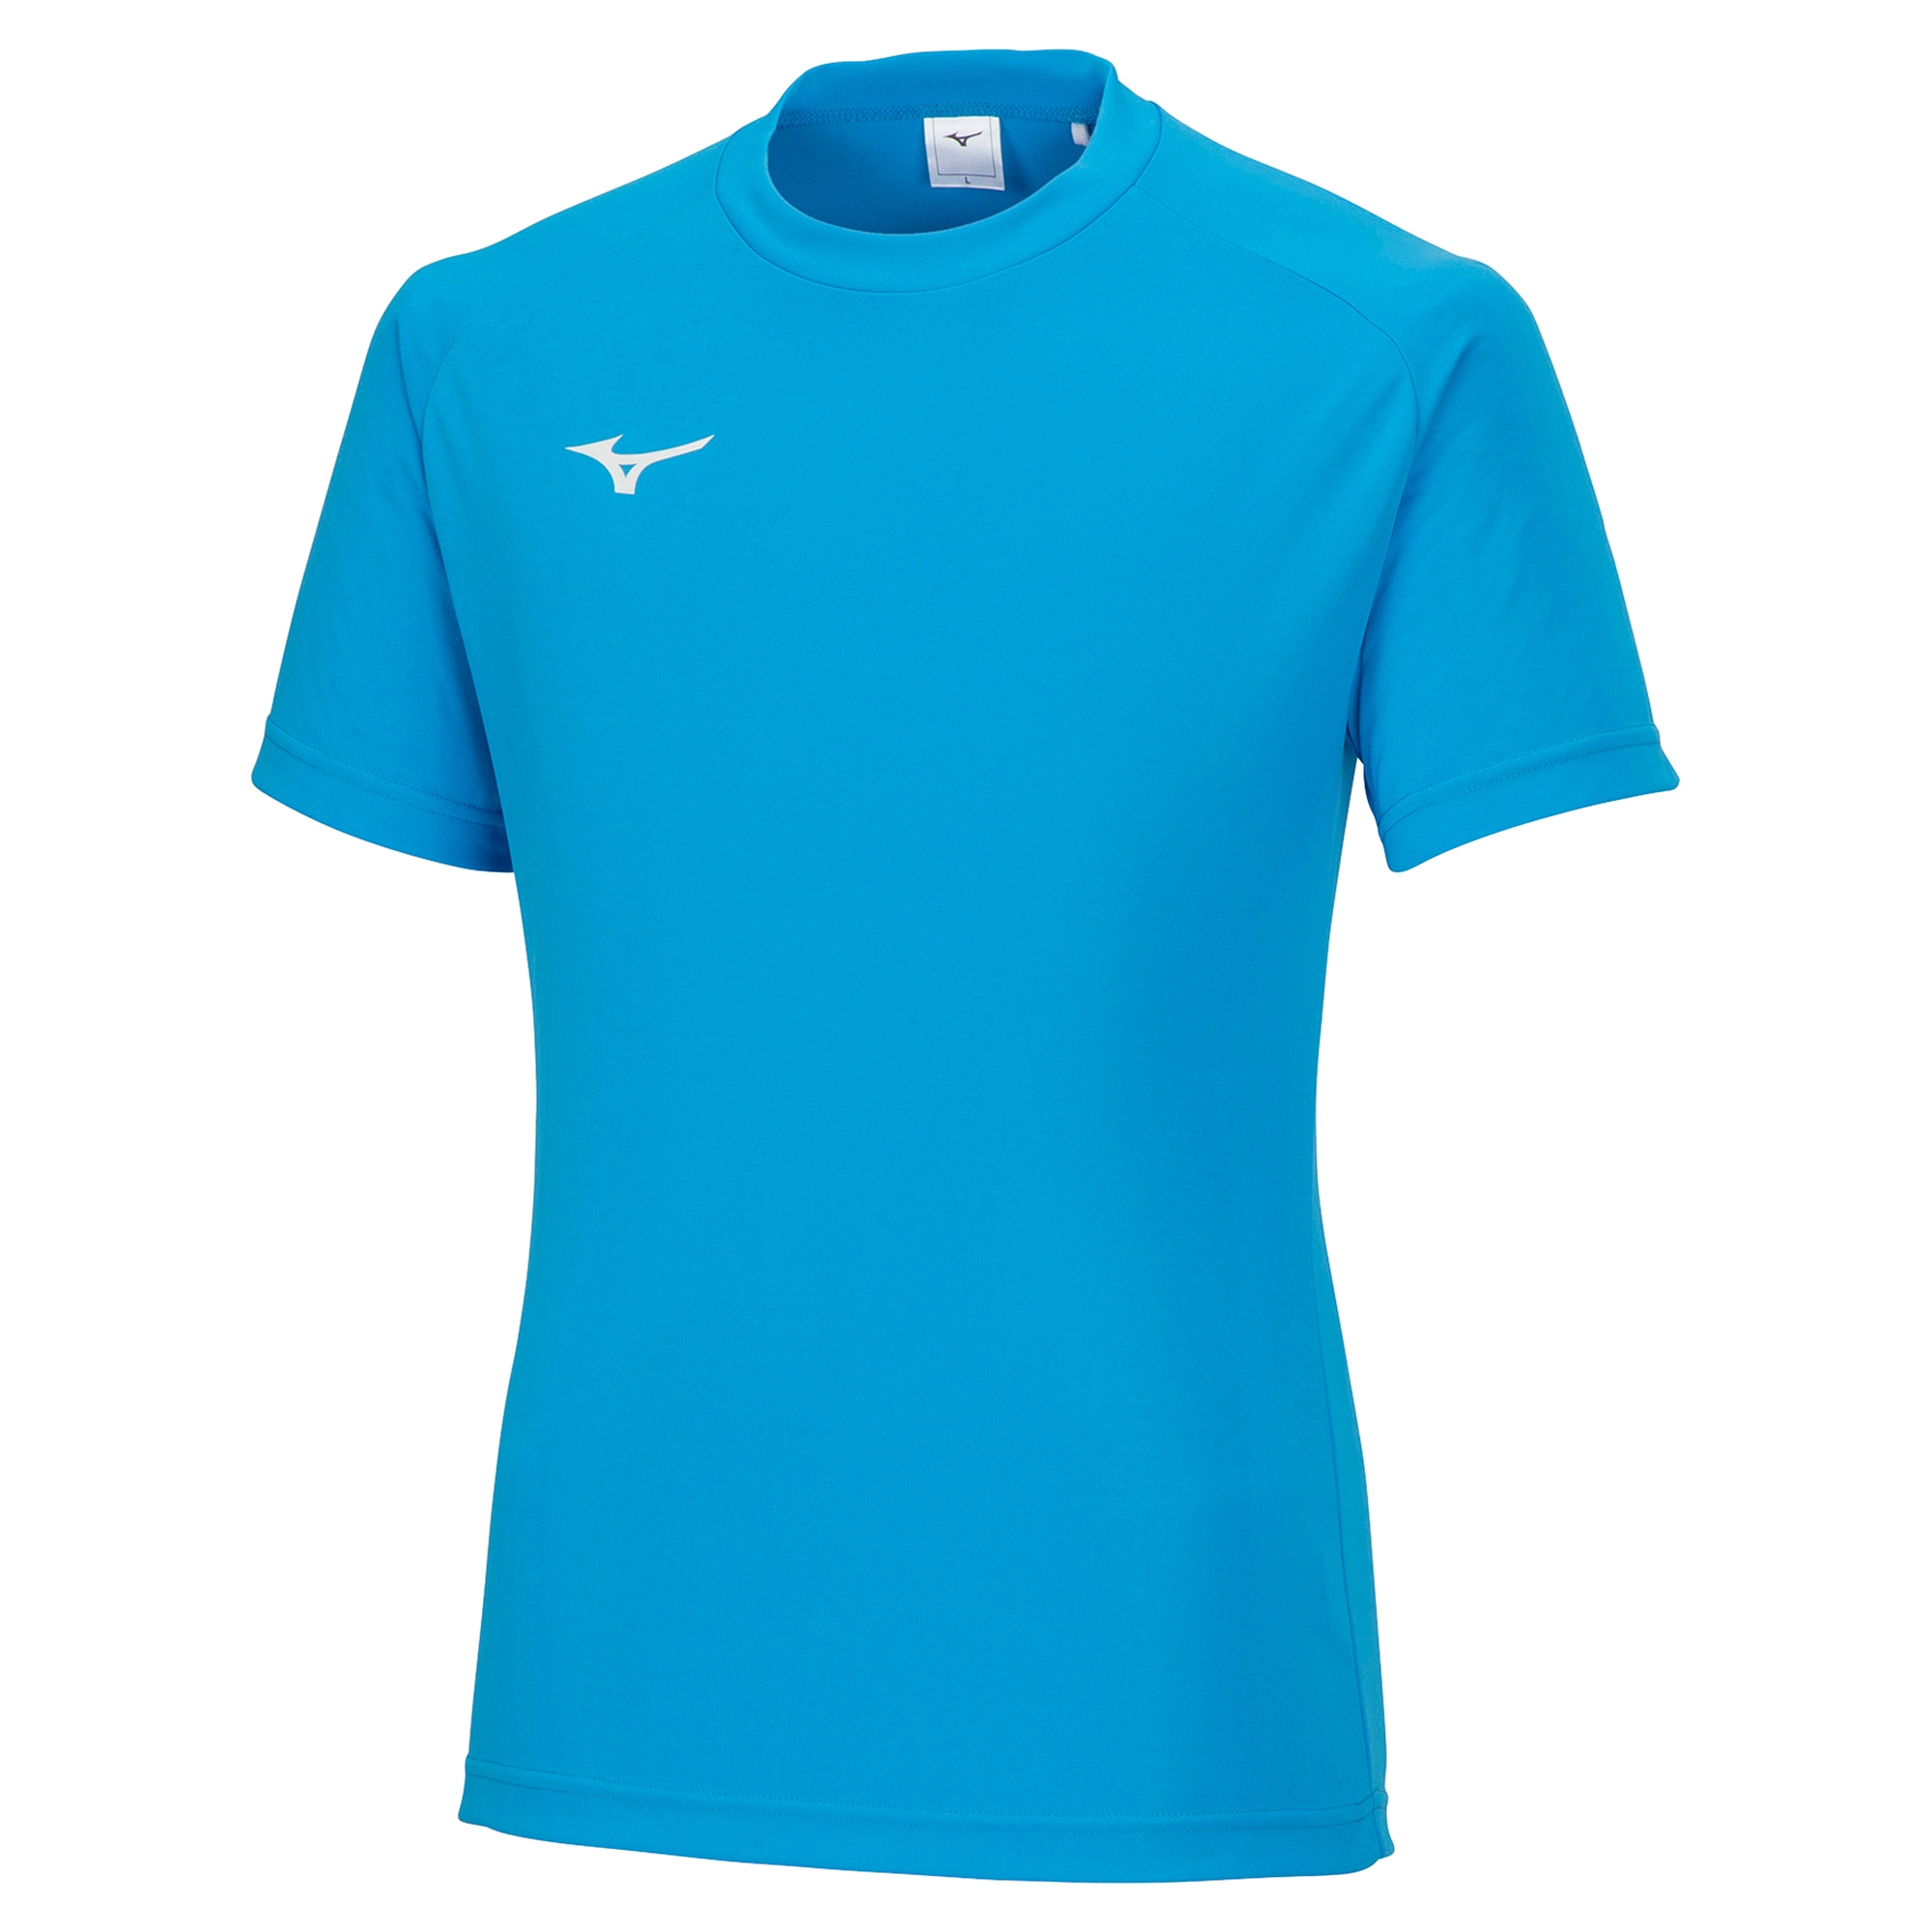 フィールドシャツ[ユニセックス]|P2MA8025|ウエア|サッカー 